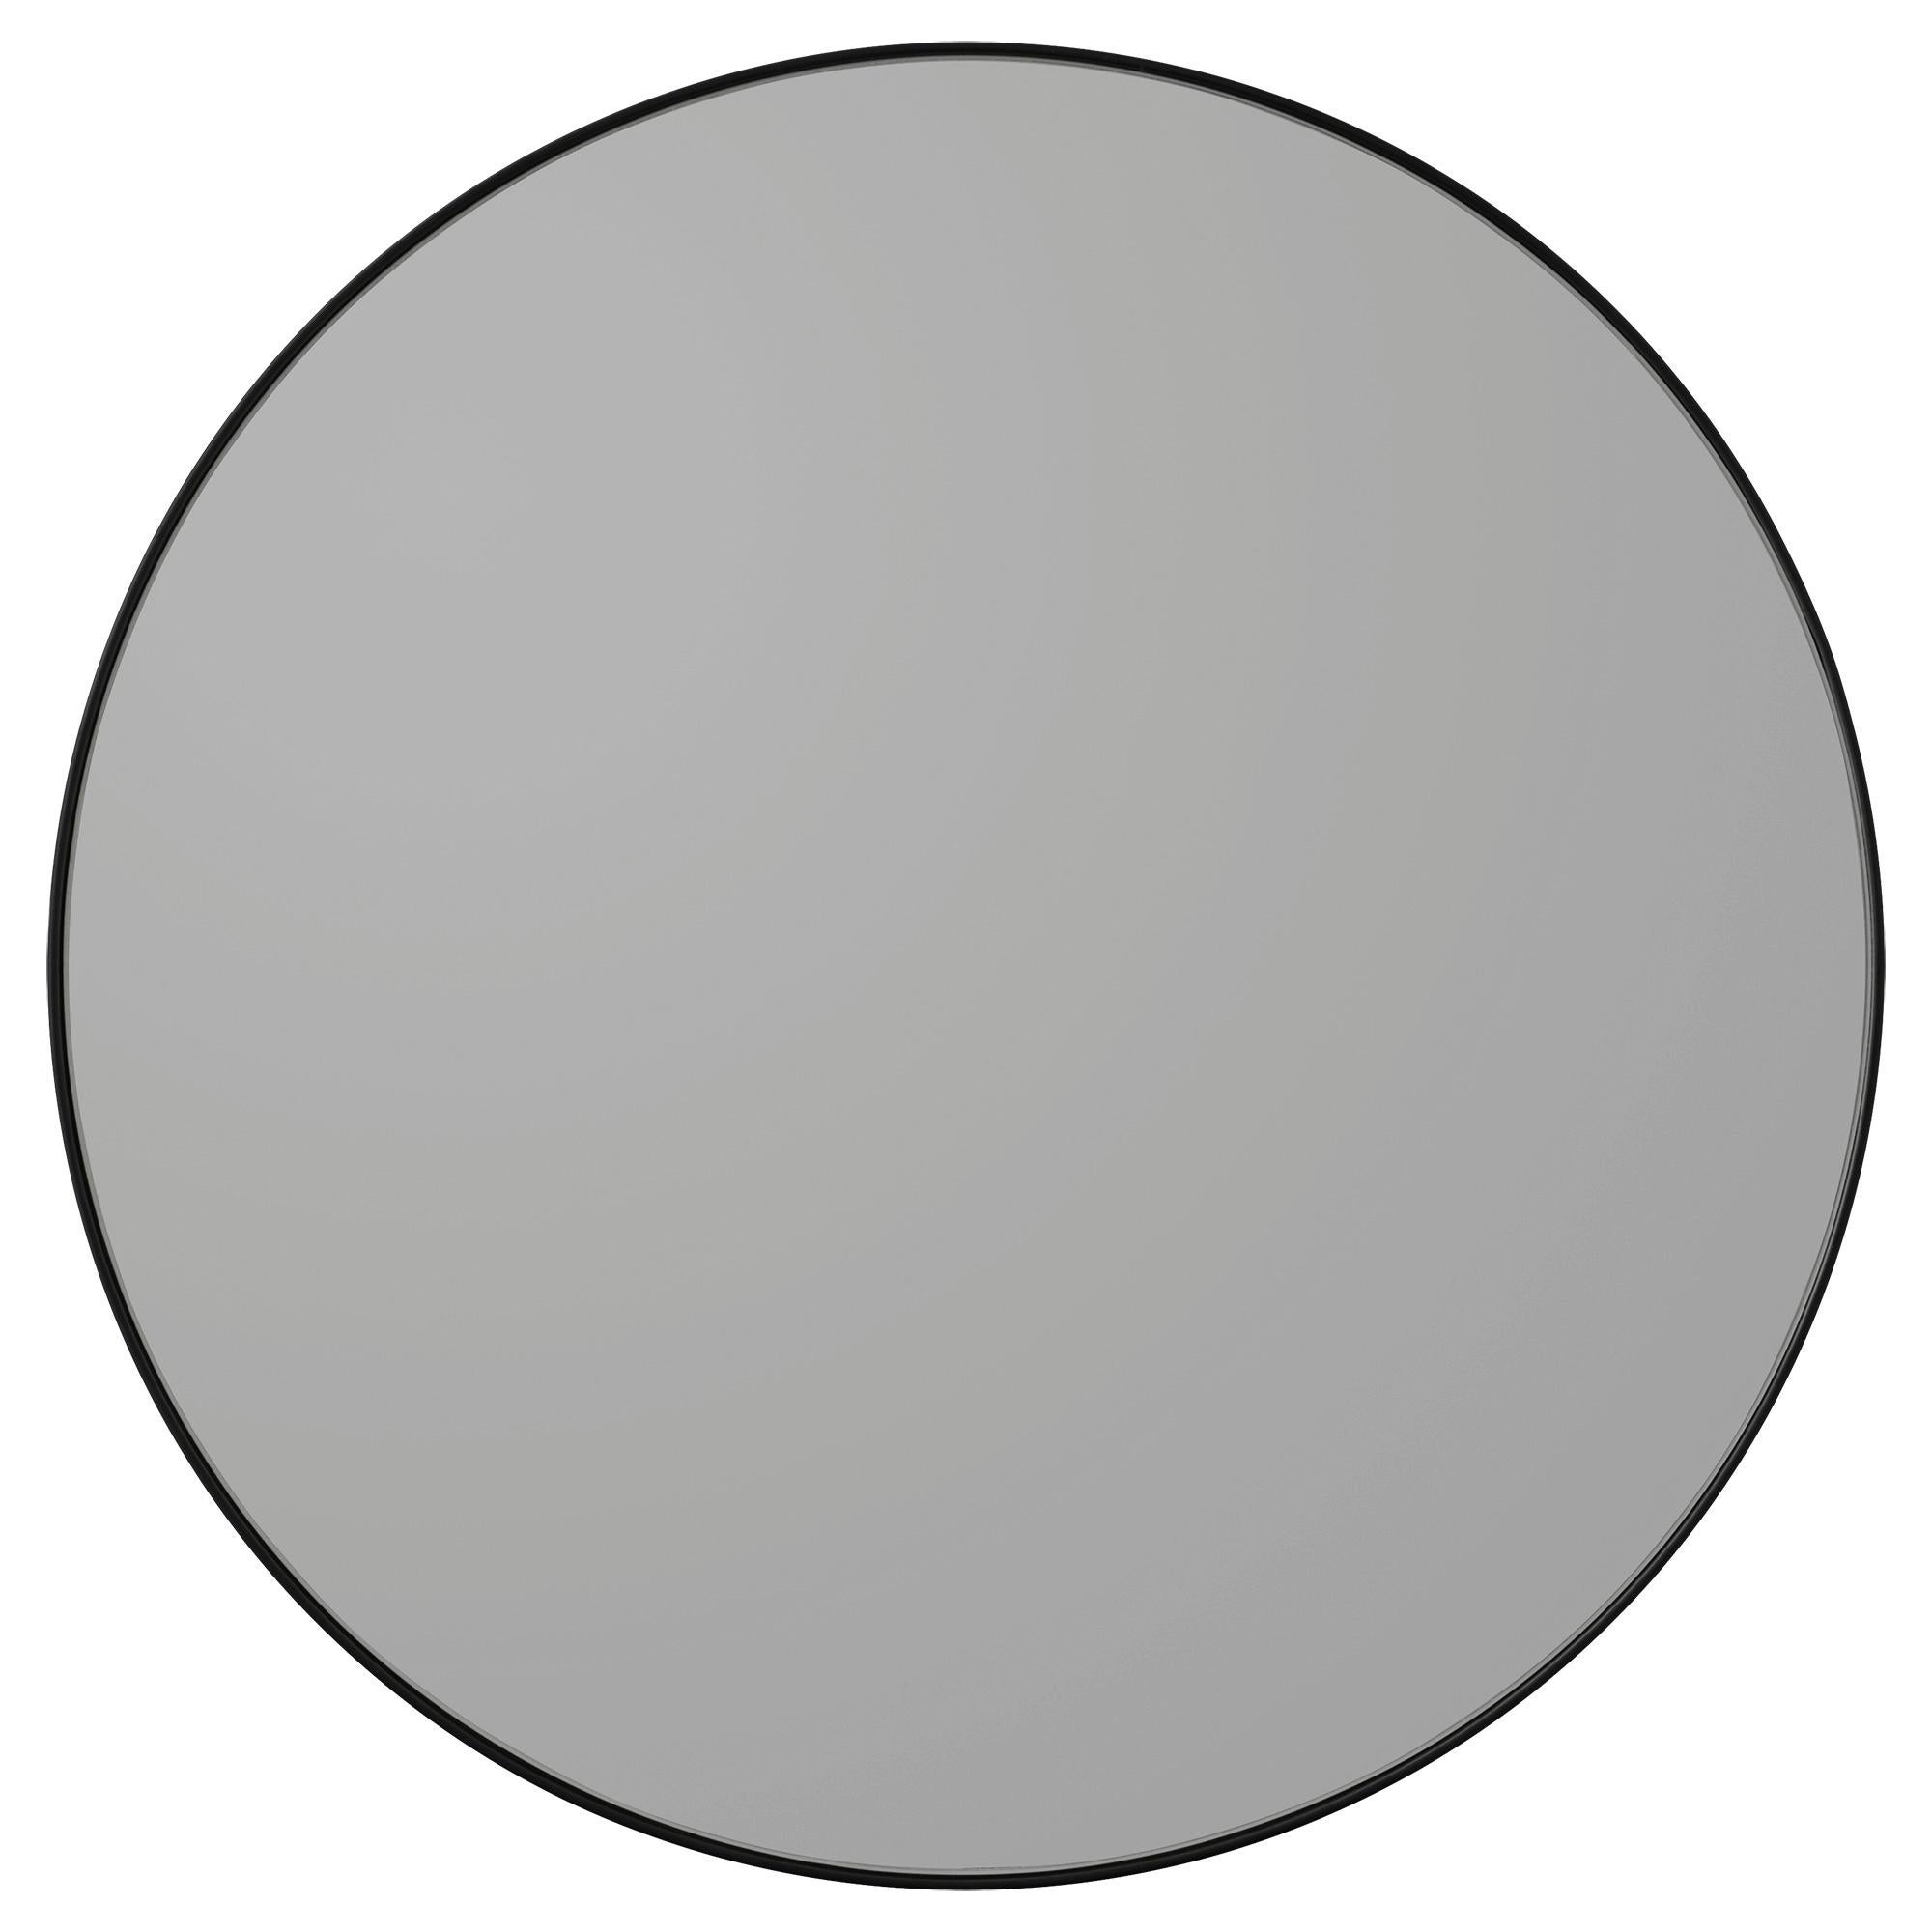 Miroir rond noir Circum
Dimensions : Ø 110 x 2 cm
Matériaux : Verre, cuivre, MDF

Les miroirs Circum sont un ajout élégant à la maison et avec leurs cadres fins et leur verre teinté, Circum est également parfait pour les effets